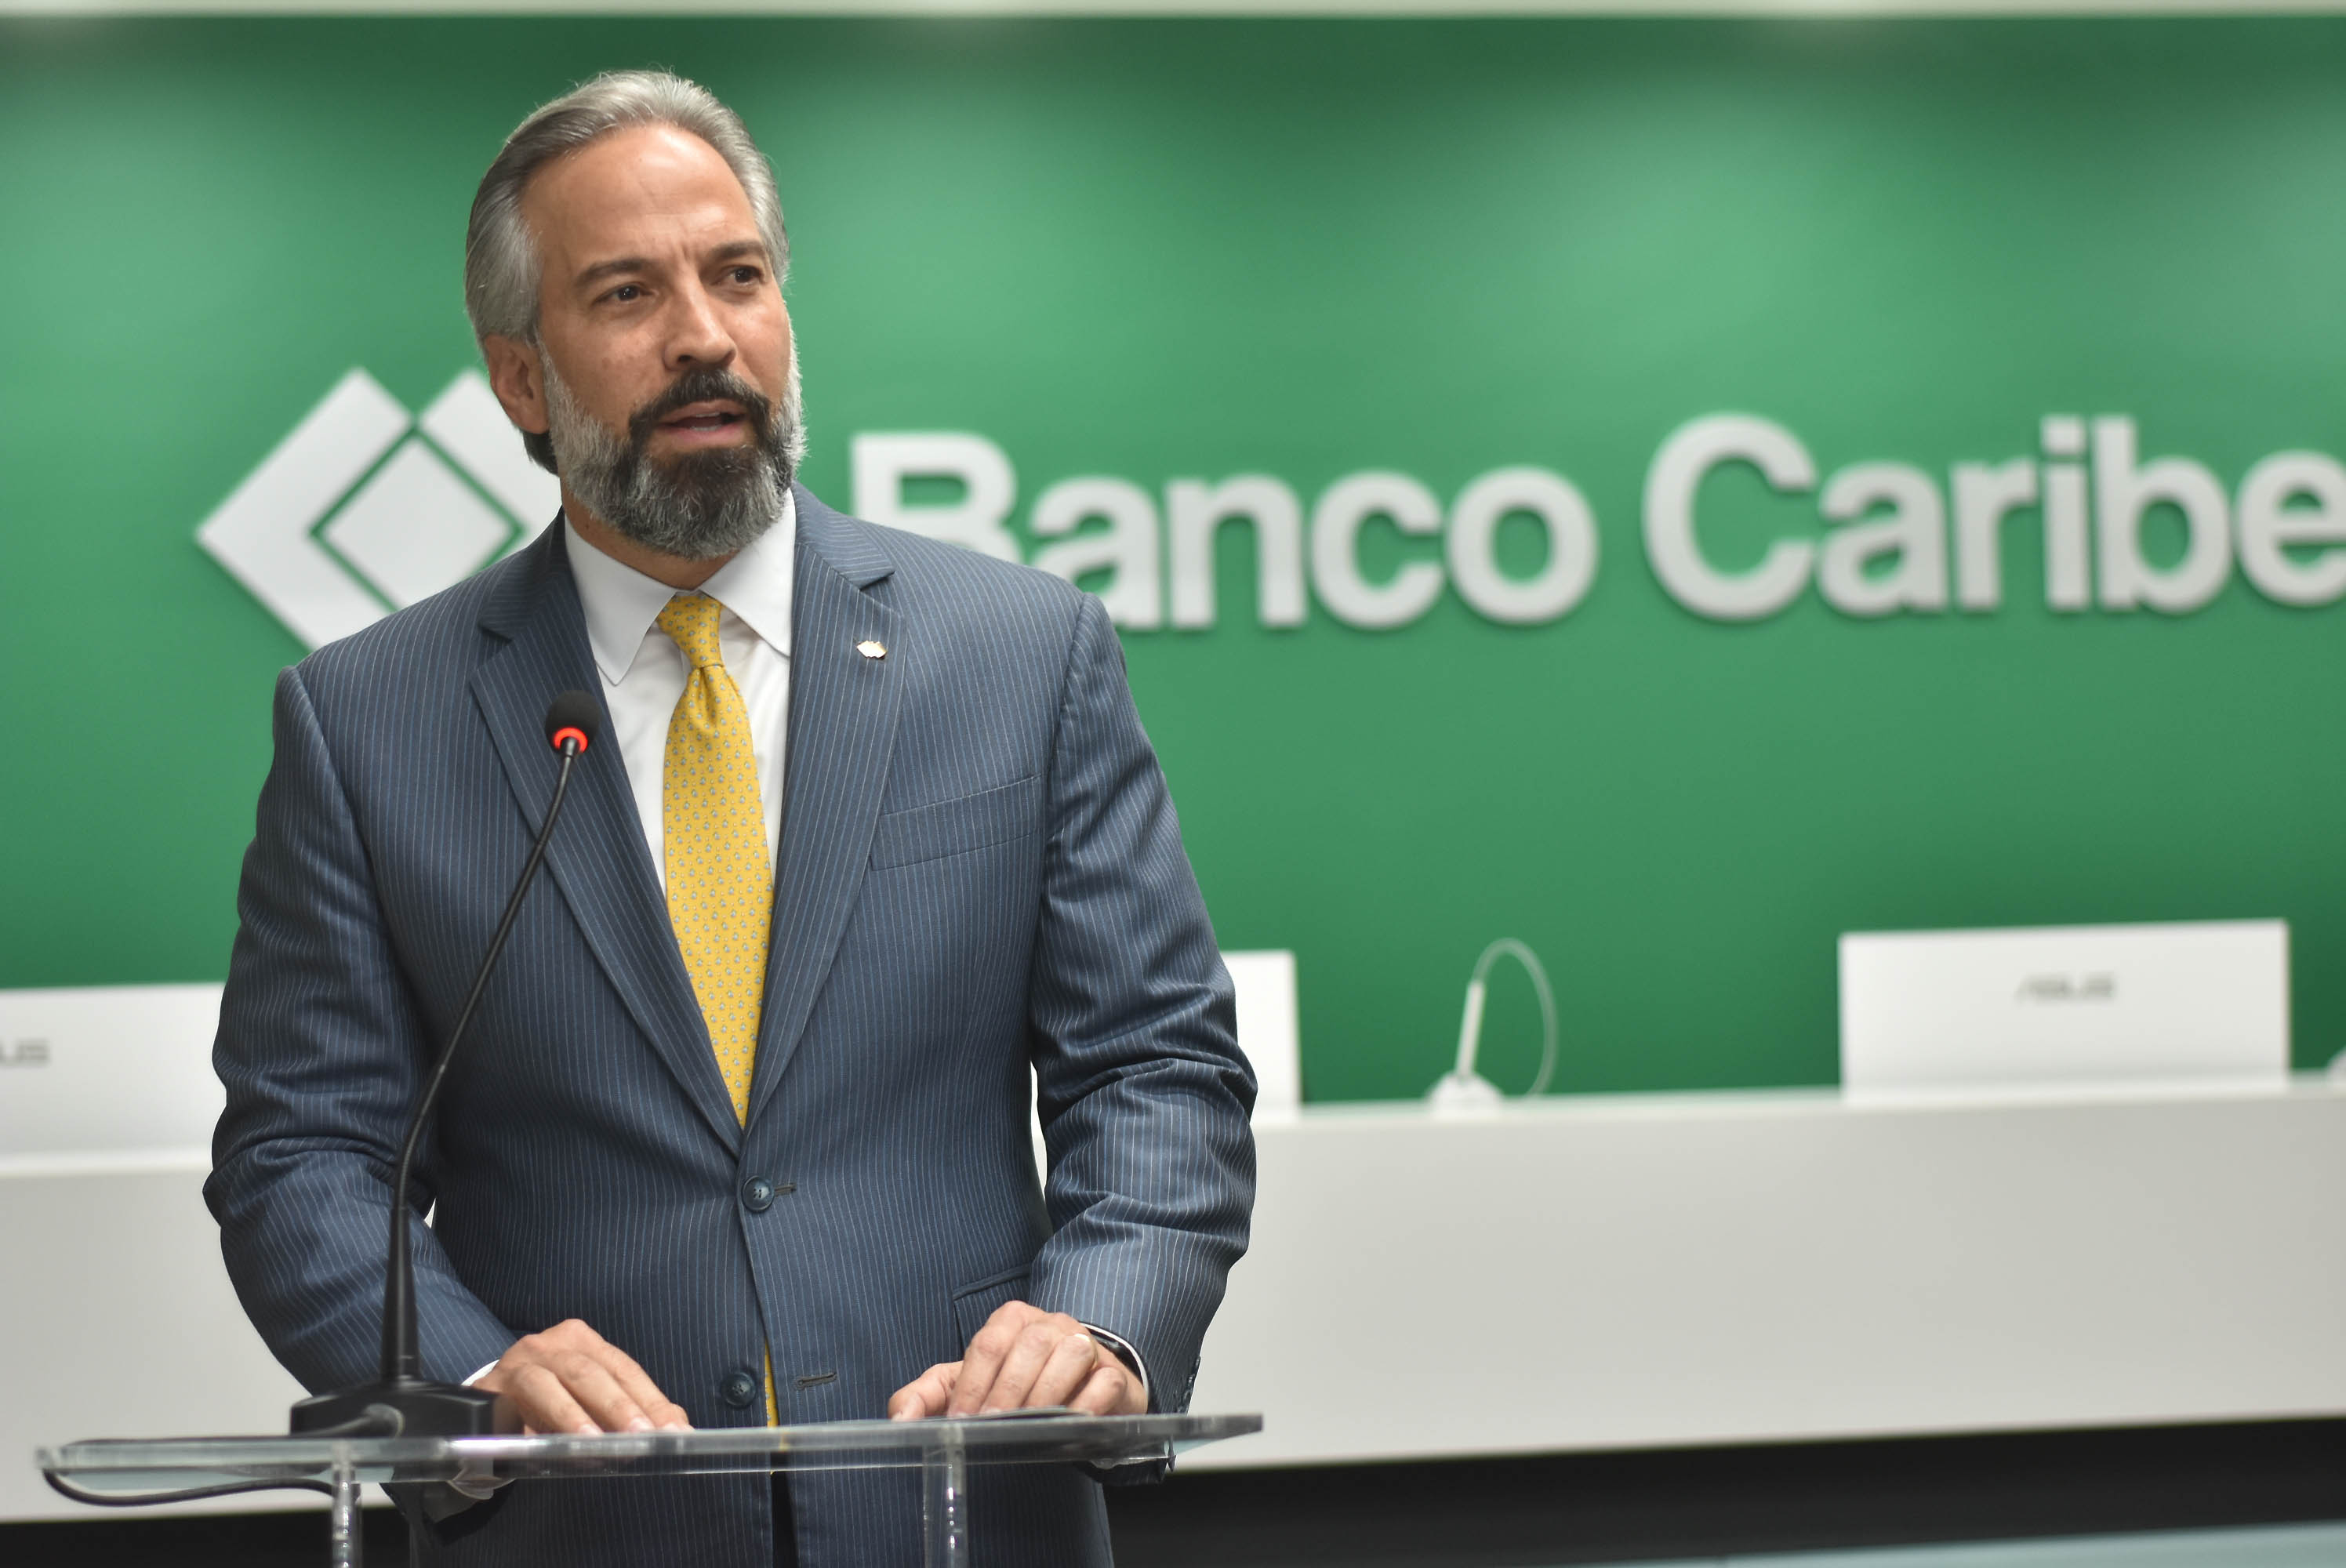 “Vamos”, nuevo portafolio para comercios del Banco Caribe